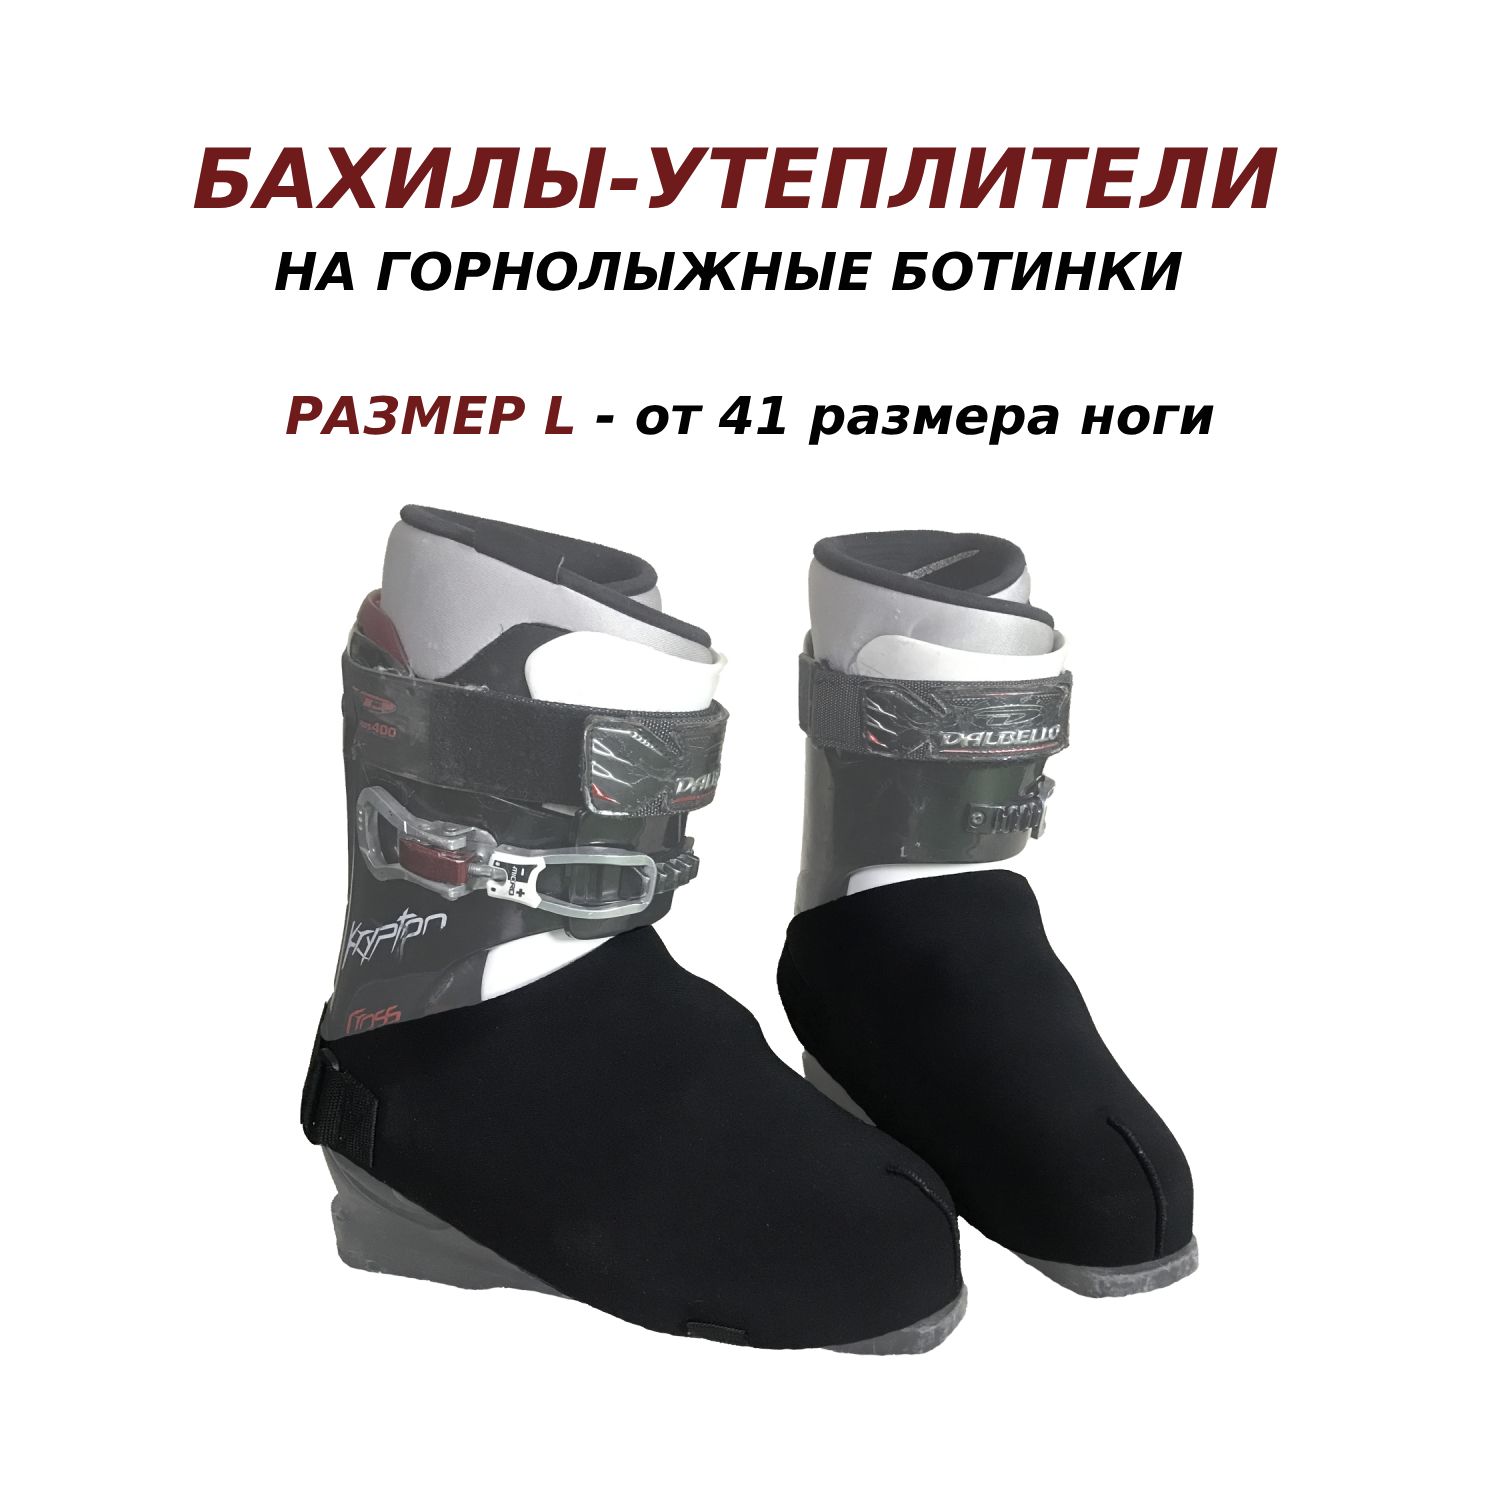 Бахилы, запчасти к лыжным ботинкам купить в Москве – интернет-магазин Ювента Спорт!